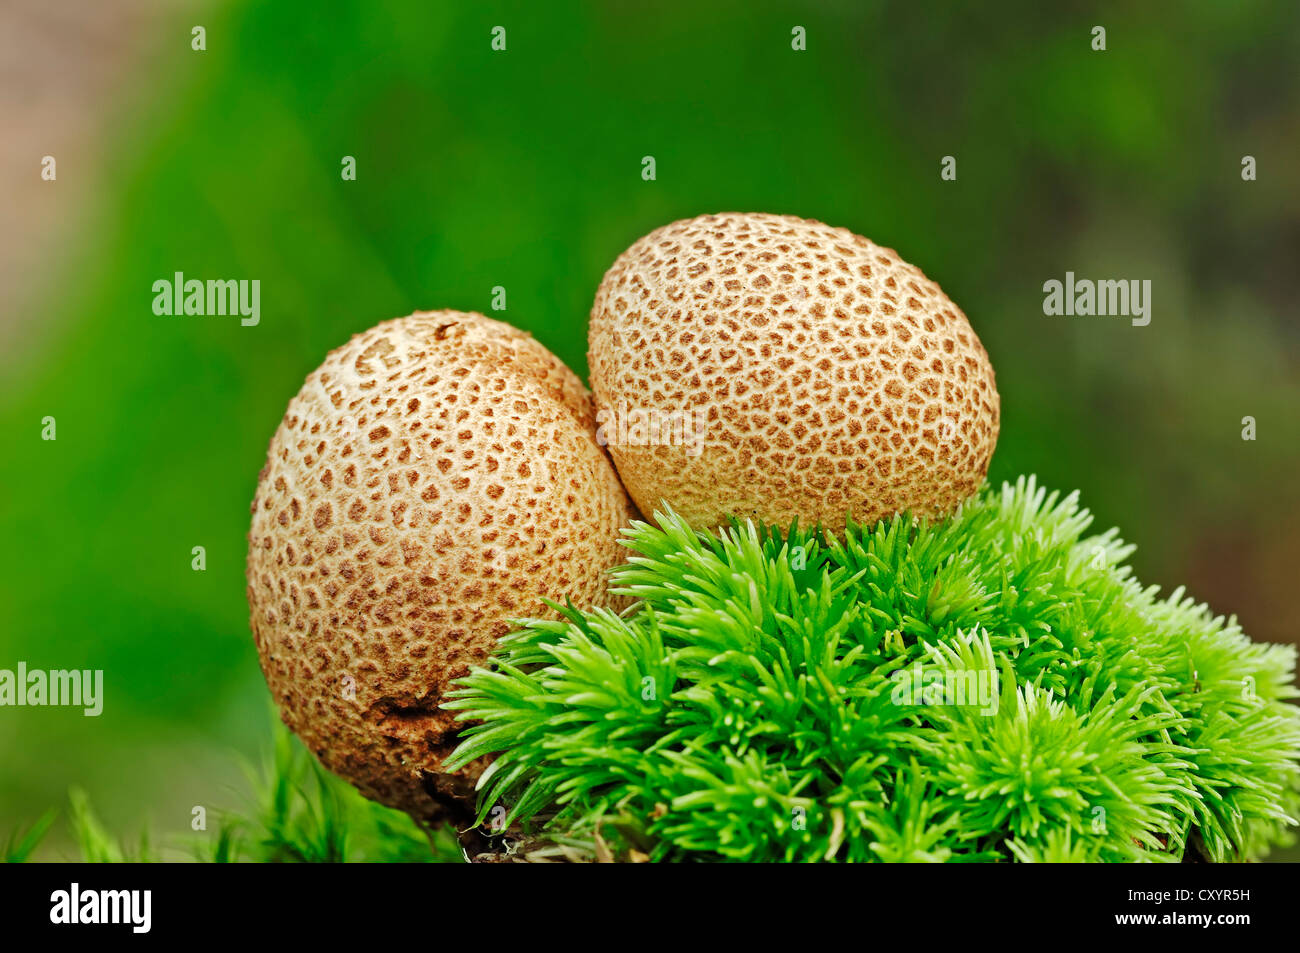 Common earthball, pigskin poison puffball (Scleroderma citrinum), poisonous mushroom, Gelderland, the Netherlands, Europe Stock Photo